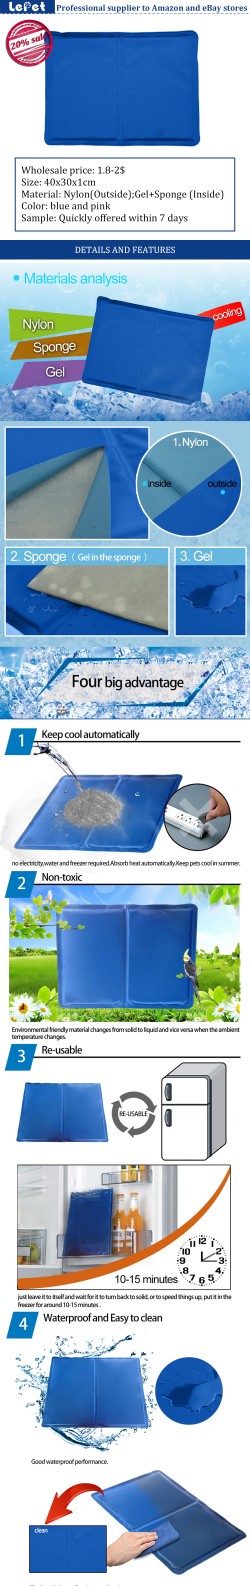 manufacturer wholesale re-usable gel+sponge dog cooling mat cool gel pad